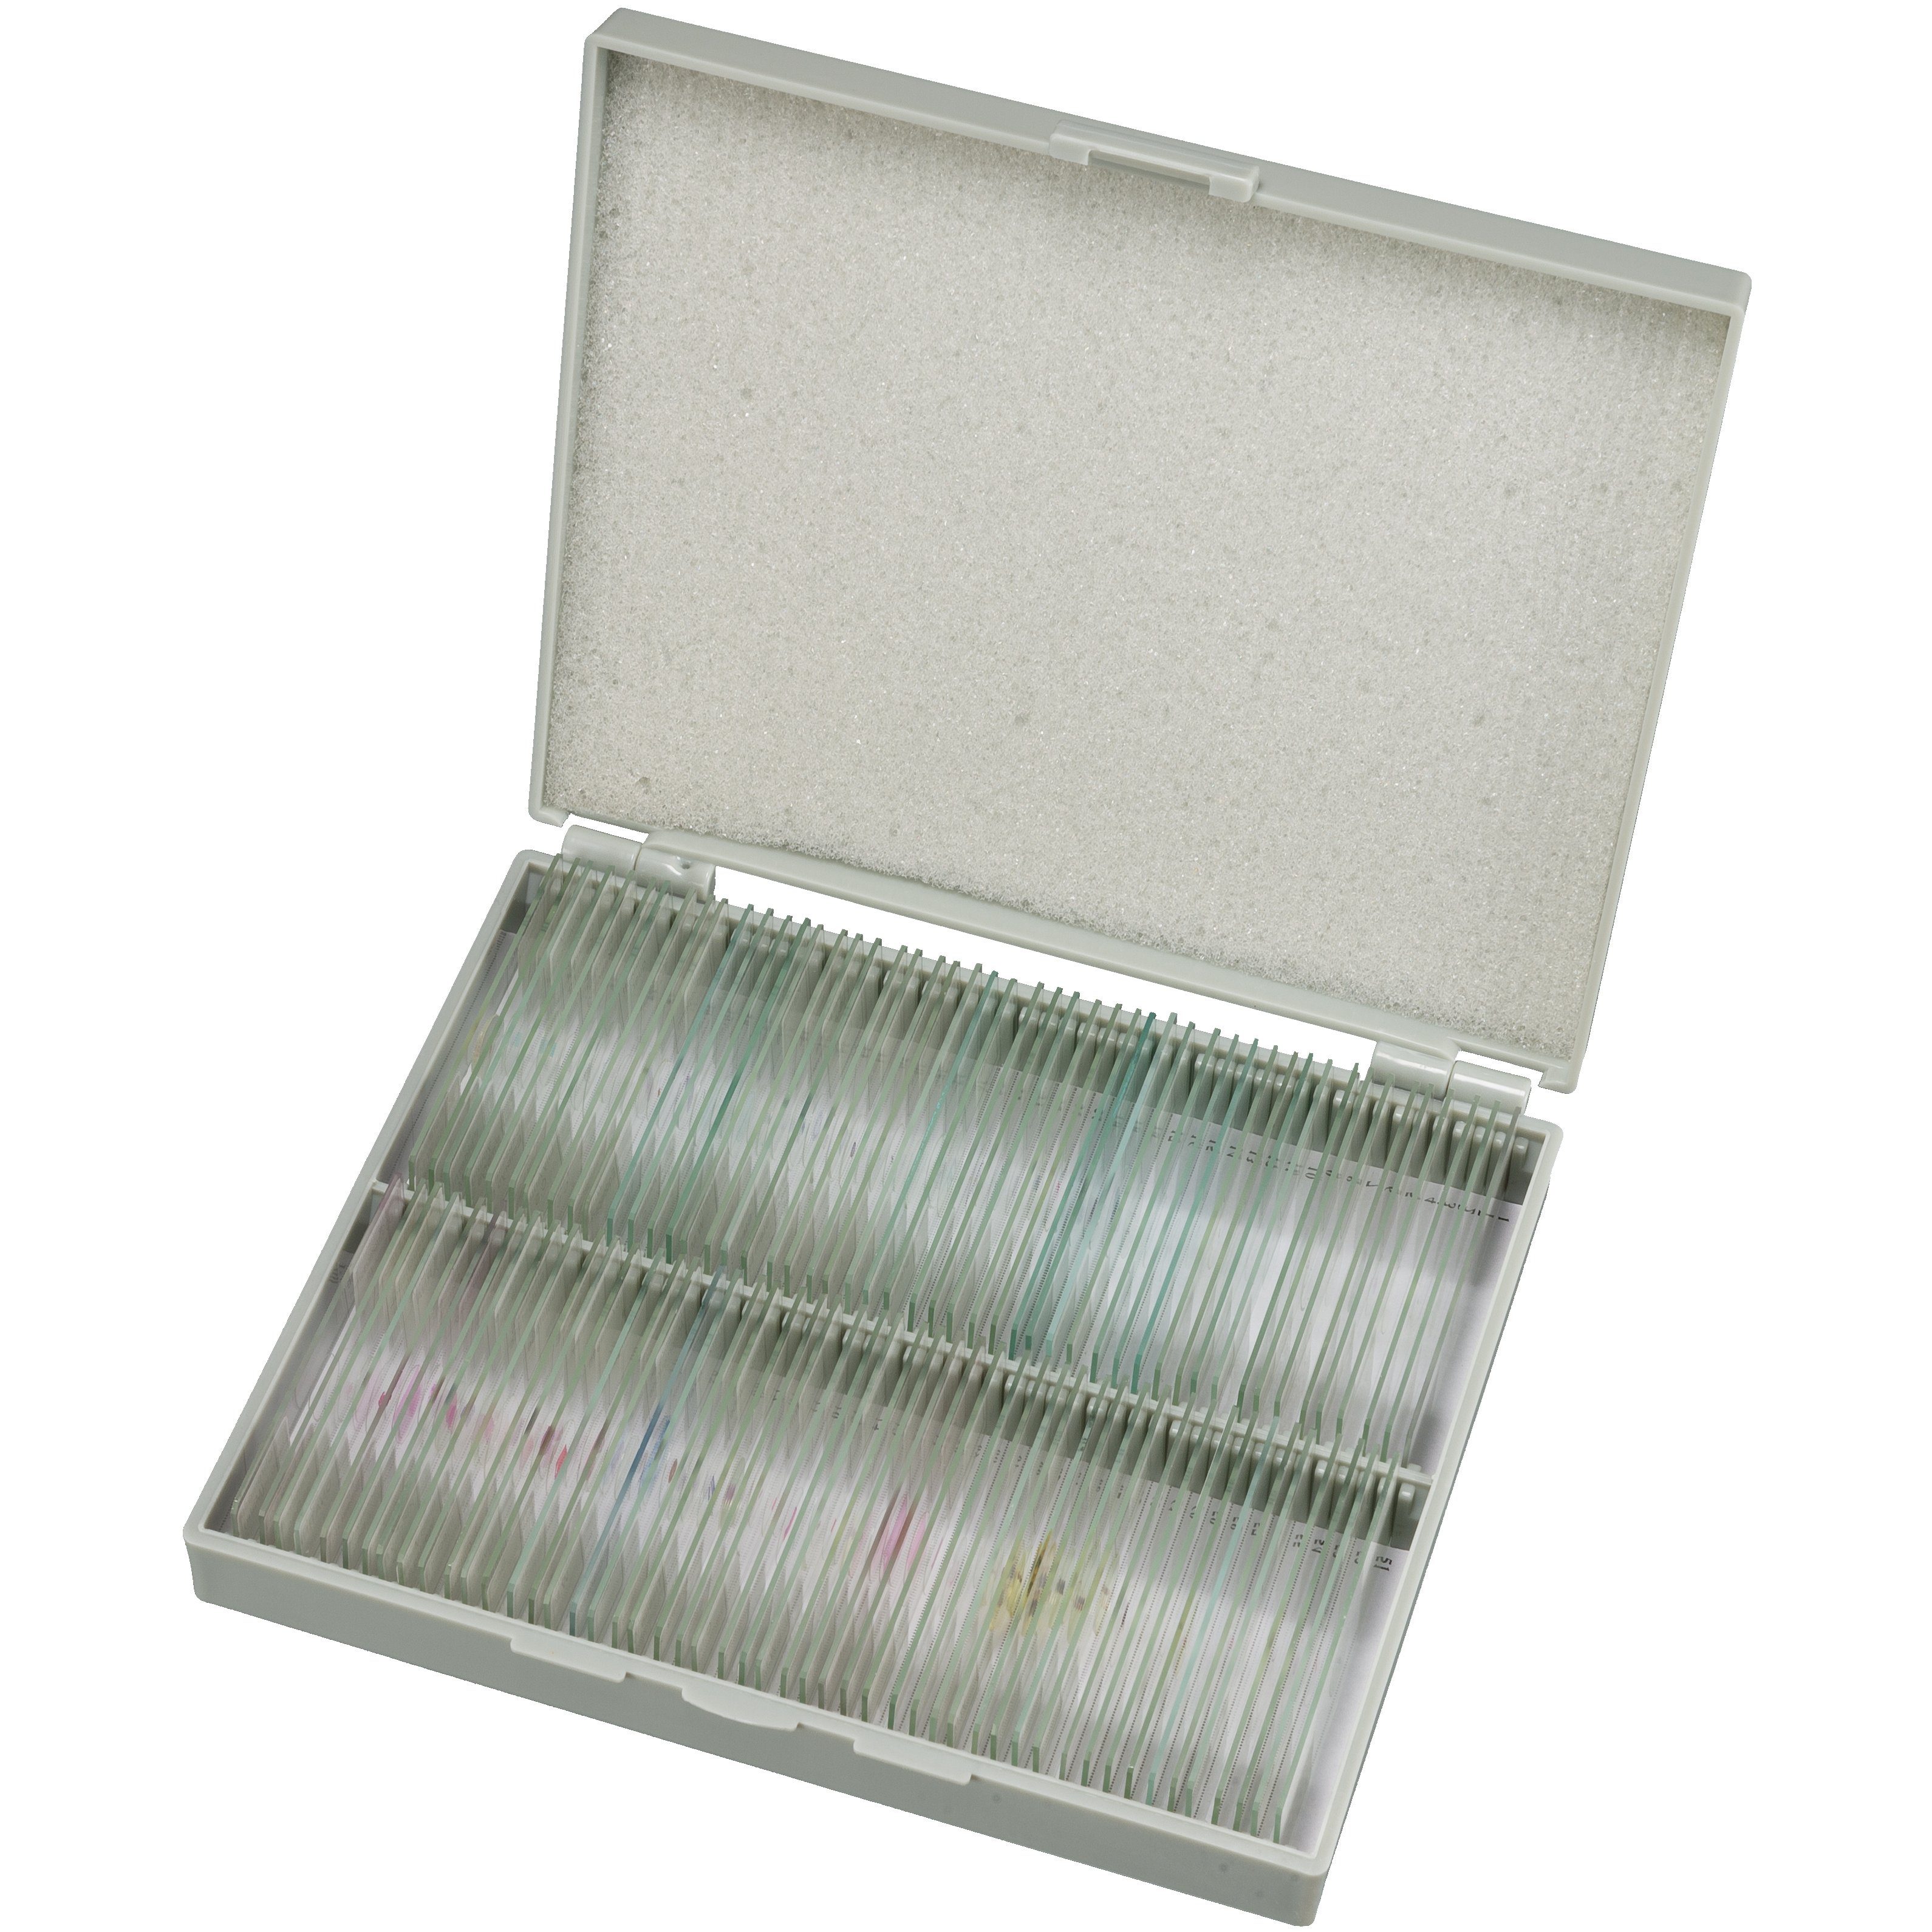 BRESSER Dauerpräparate Set mit 100 Präparaten in Kunststoffbox Auf- und Durchlichtmikroskop